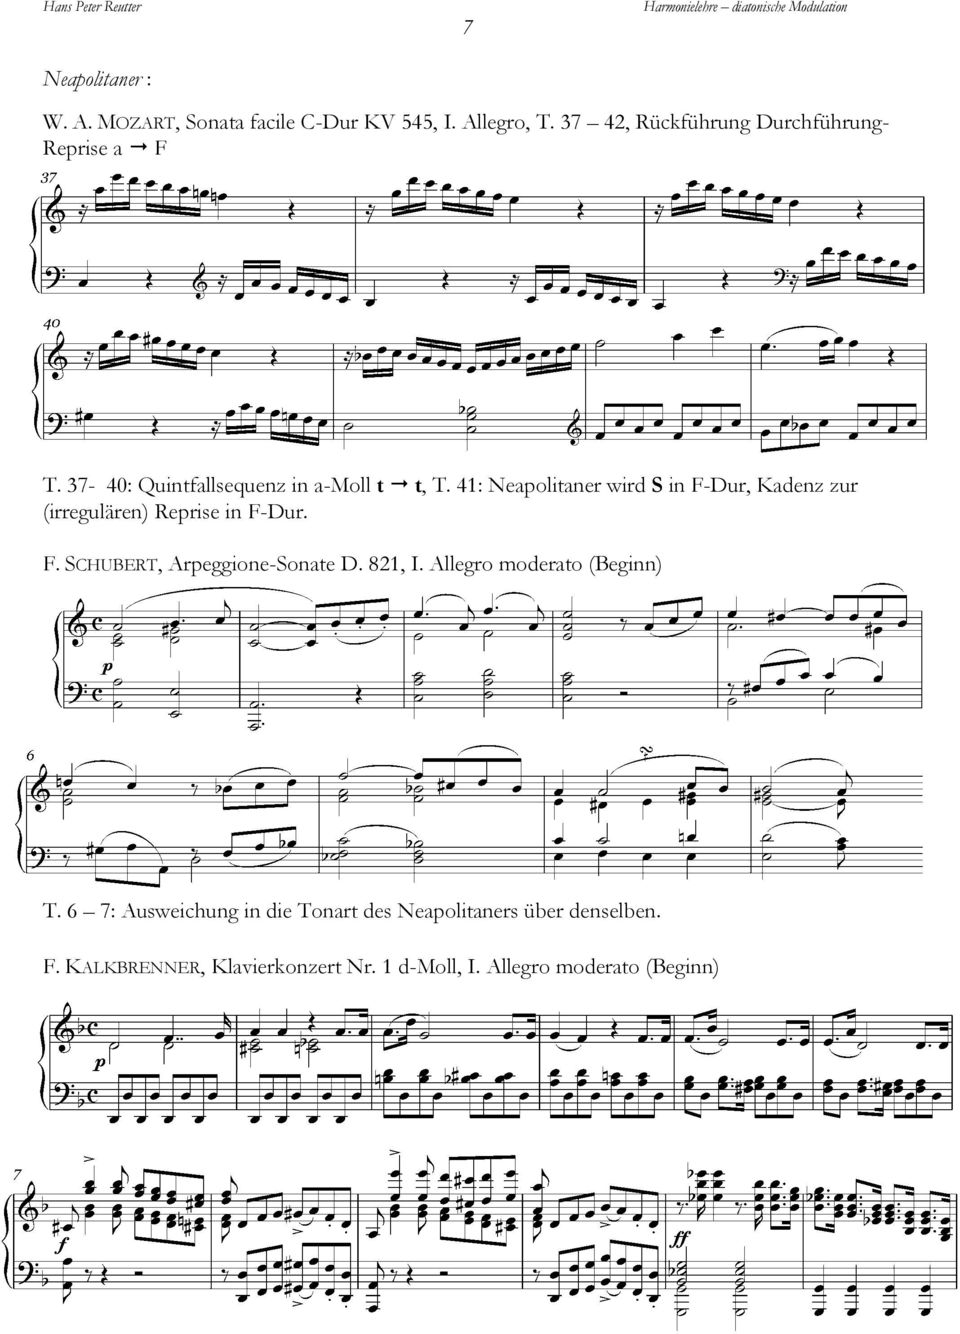 41: Neapolitaner wird S in F-Dur, Kadenz zur (irregulären) Reprise in F-Dur. F. SCHUBERT, Arpeggione-Sonate D.